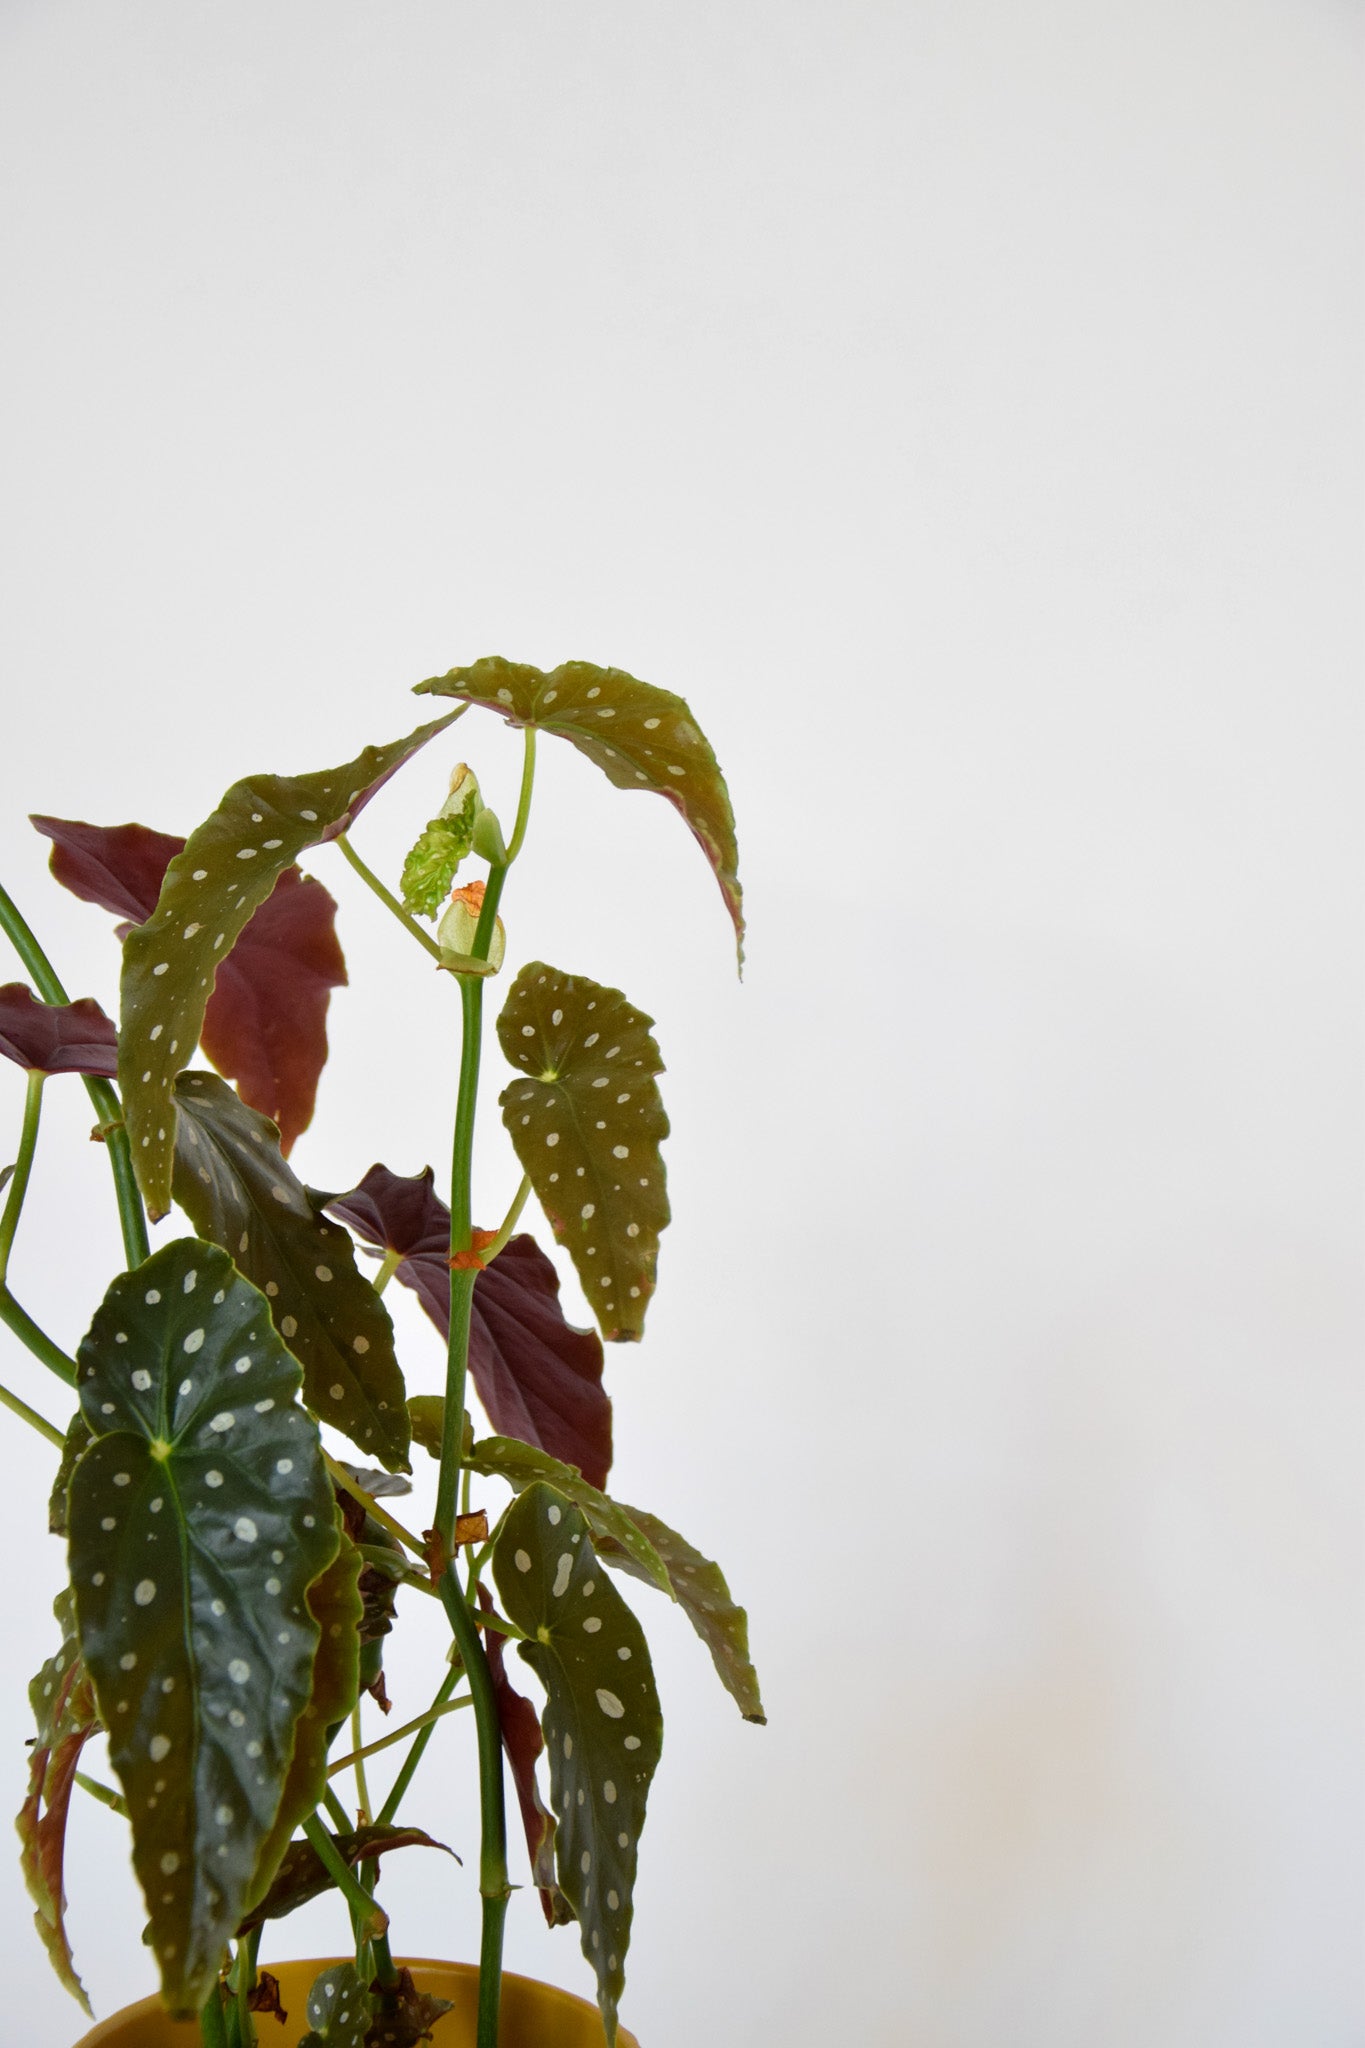 6" Begonia Maculata